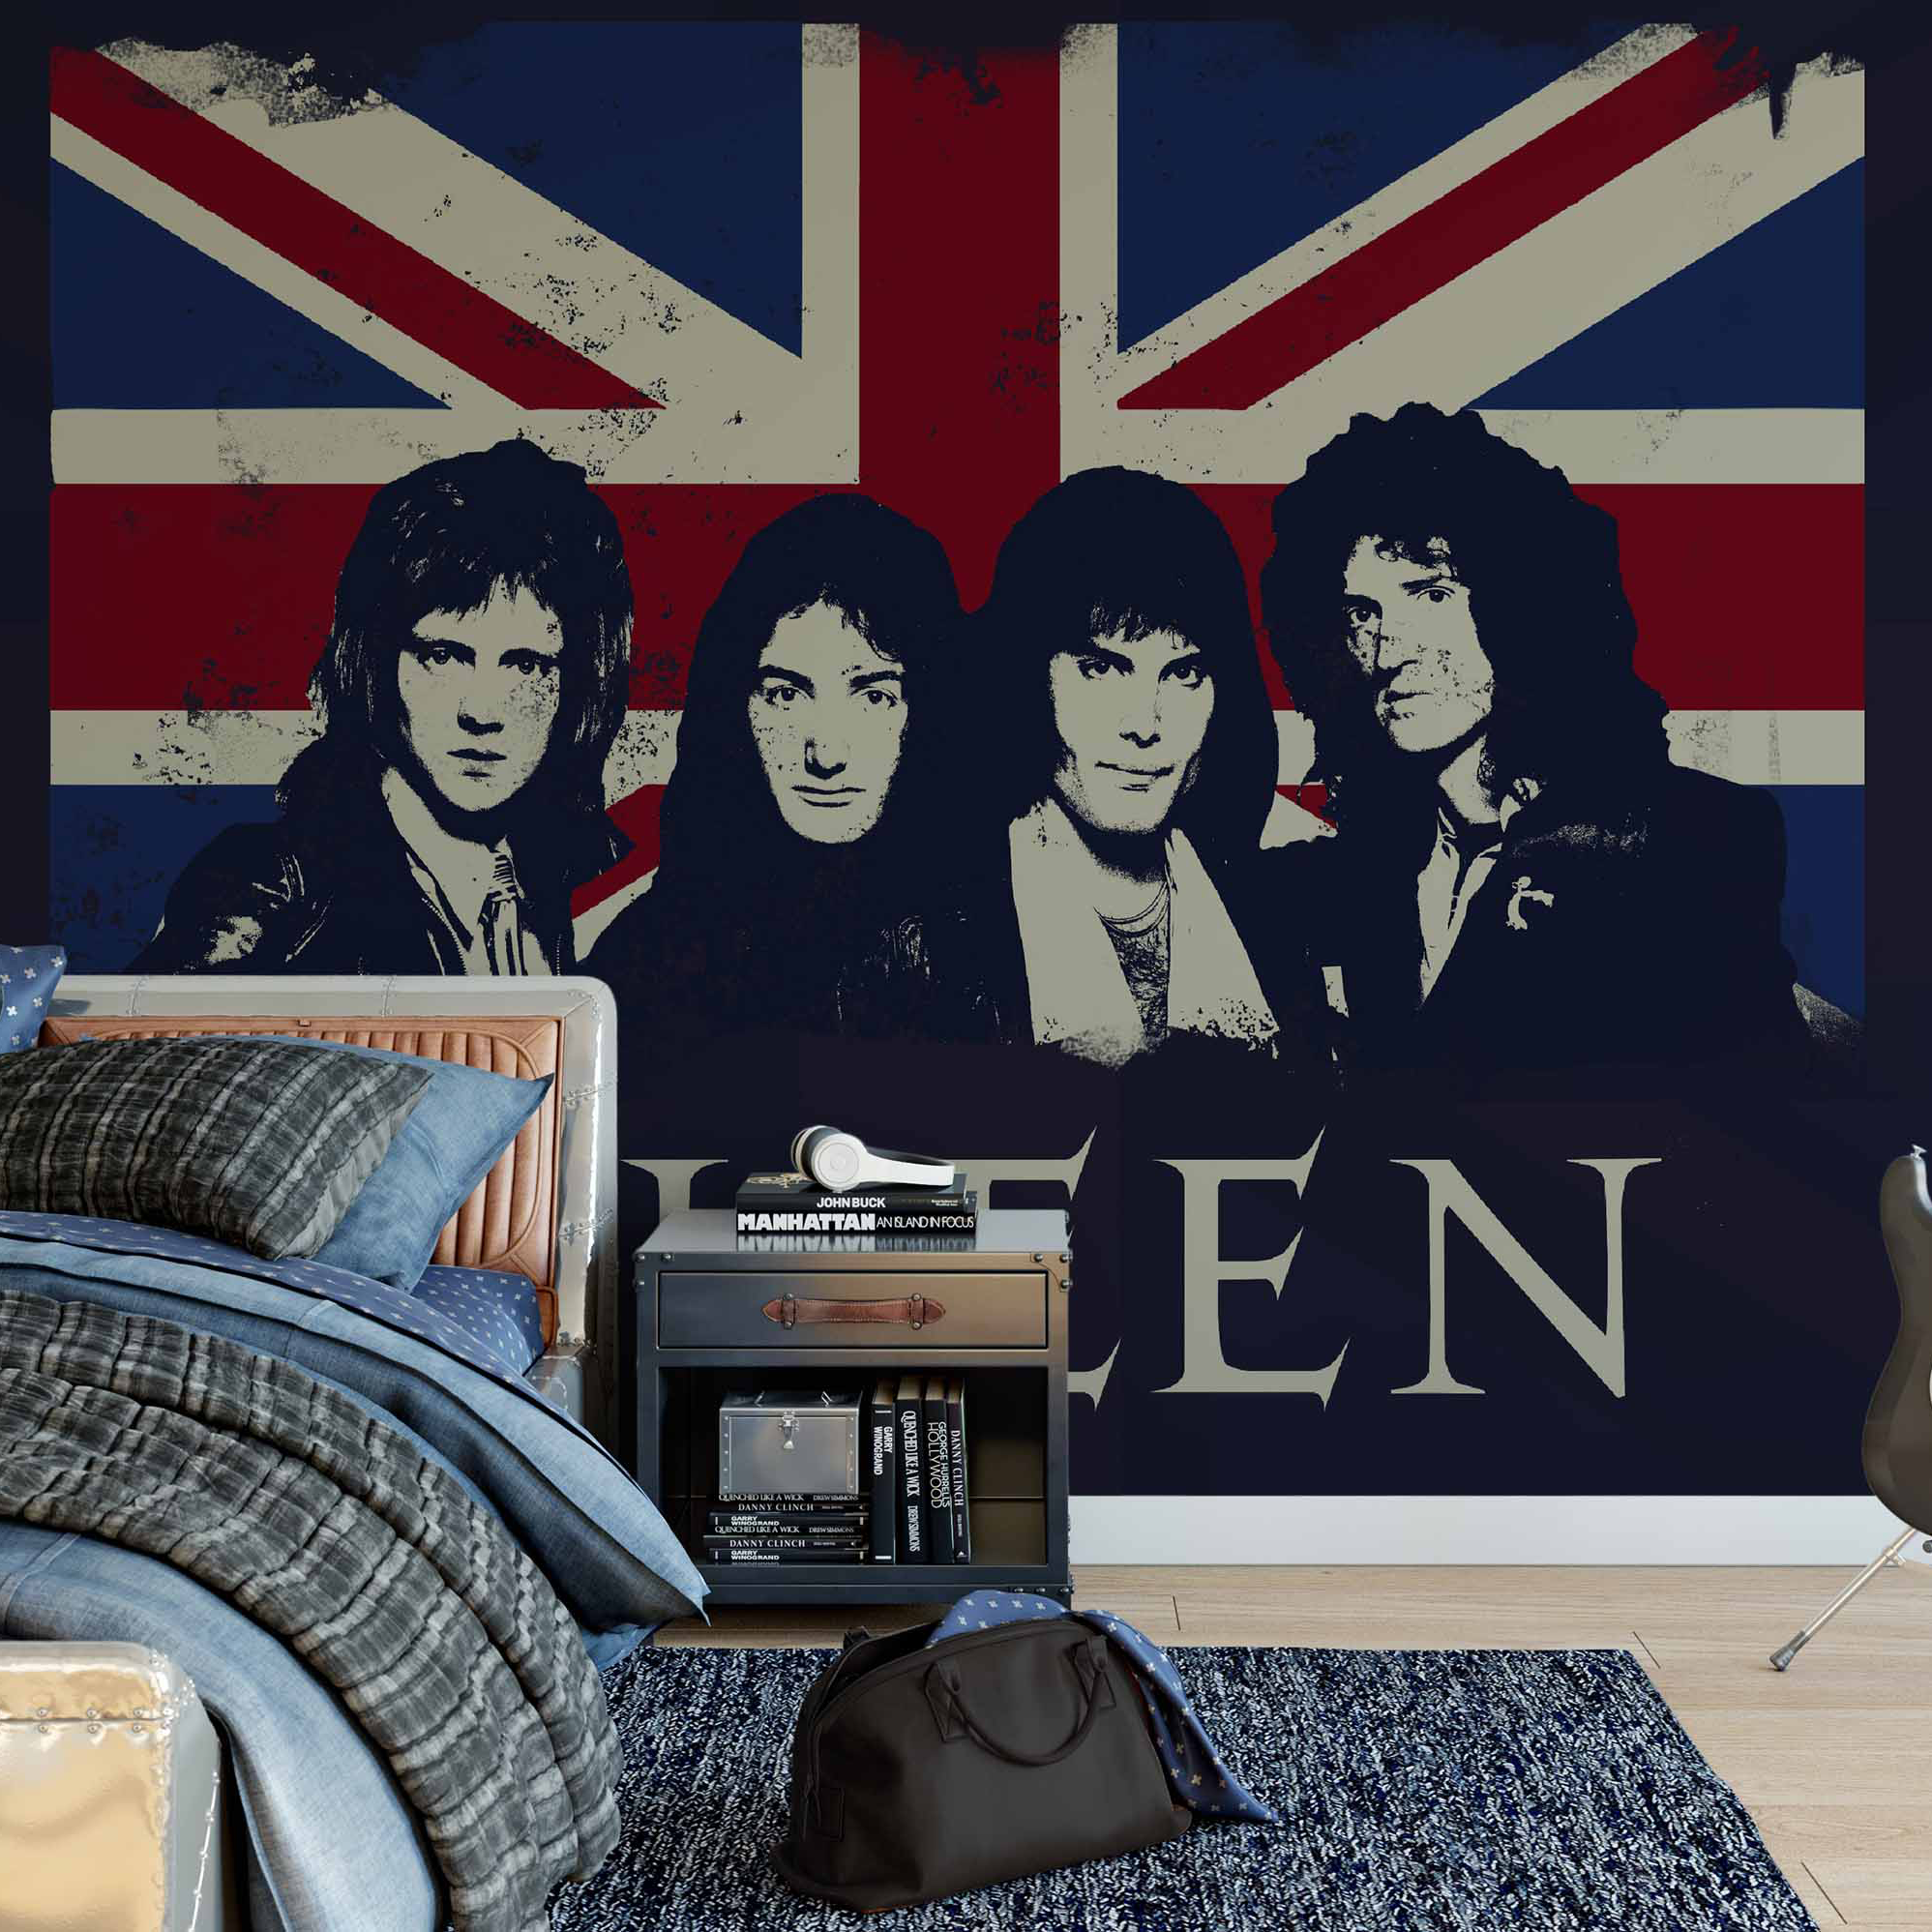 queen band wallpaper